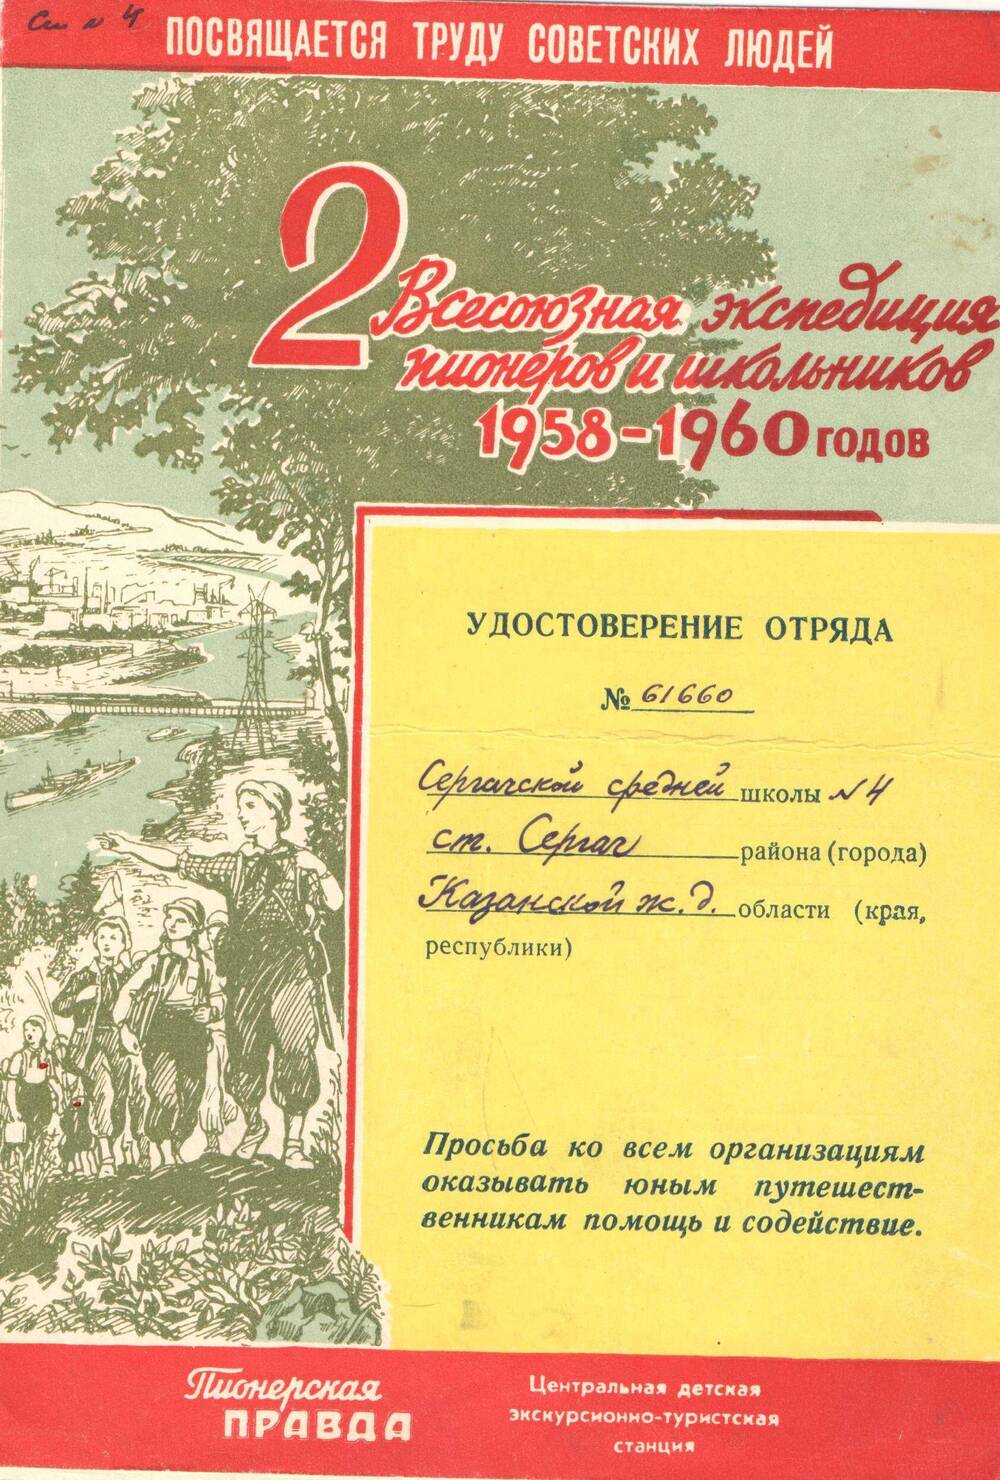 Удостоверение отряда средней школы № 4 станции Сергач № 61660. 1958-1960 гг.